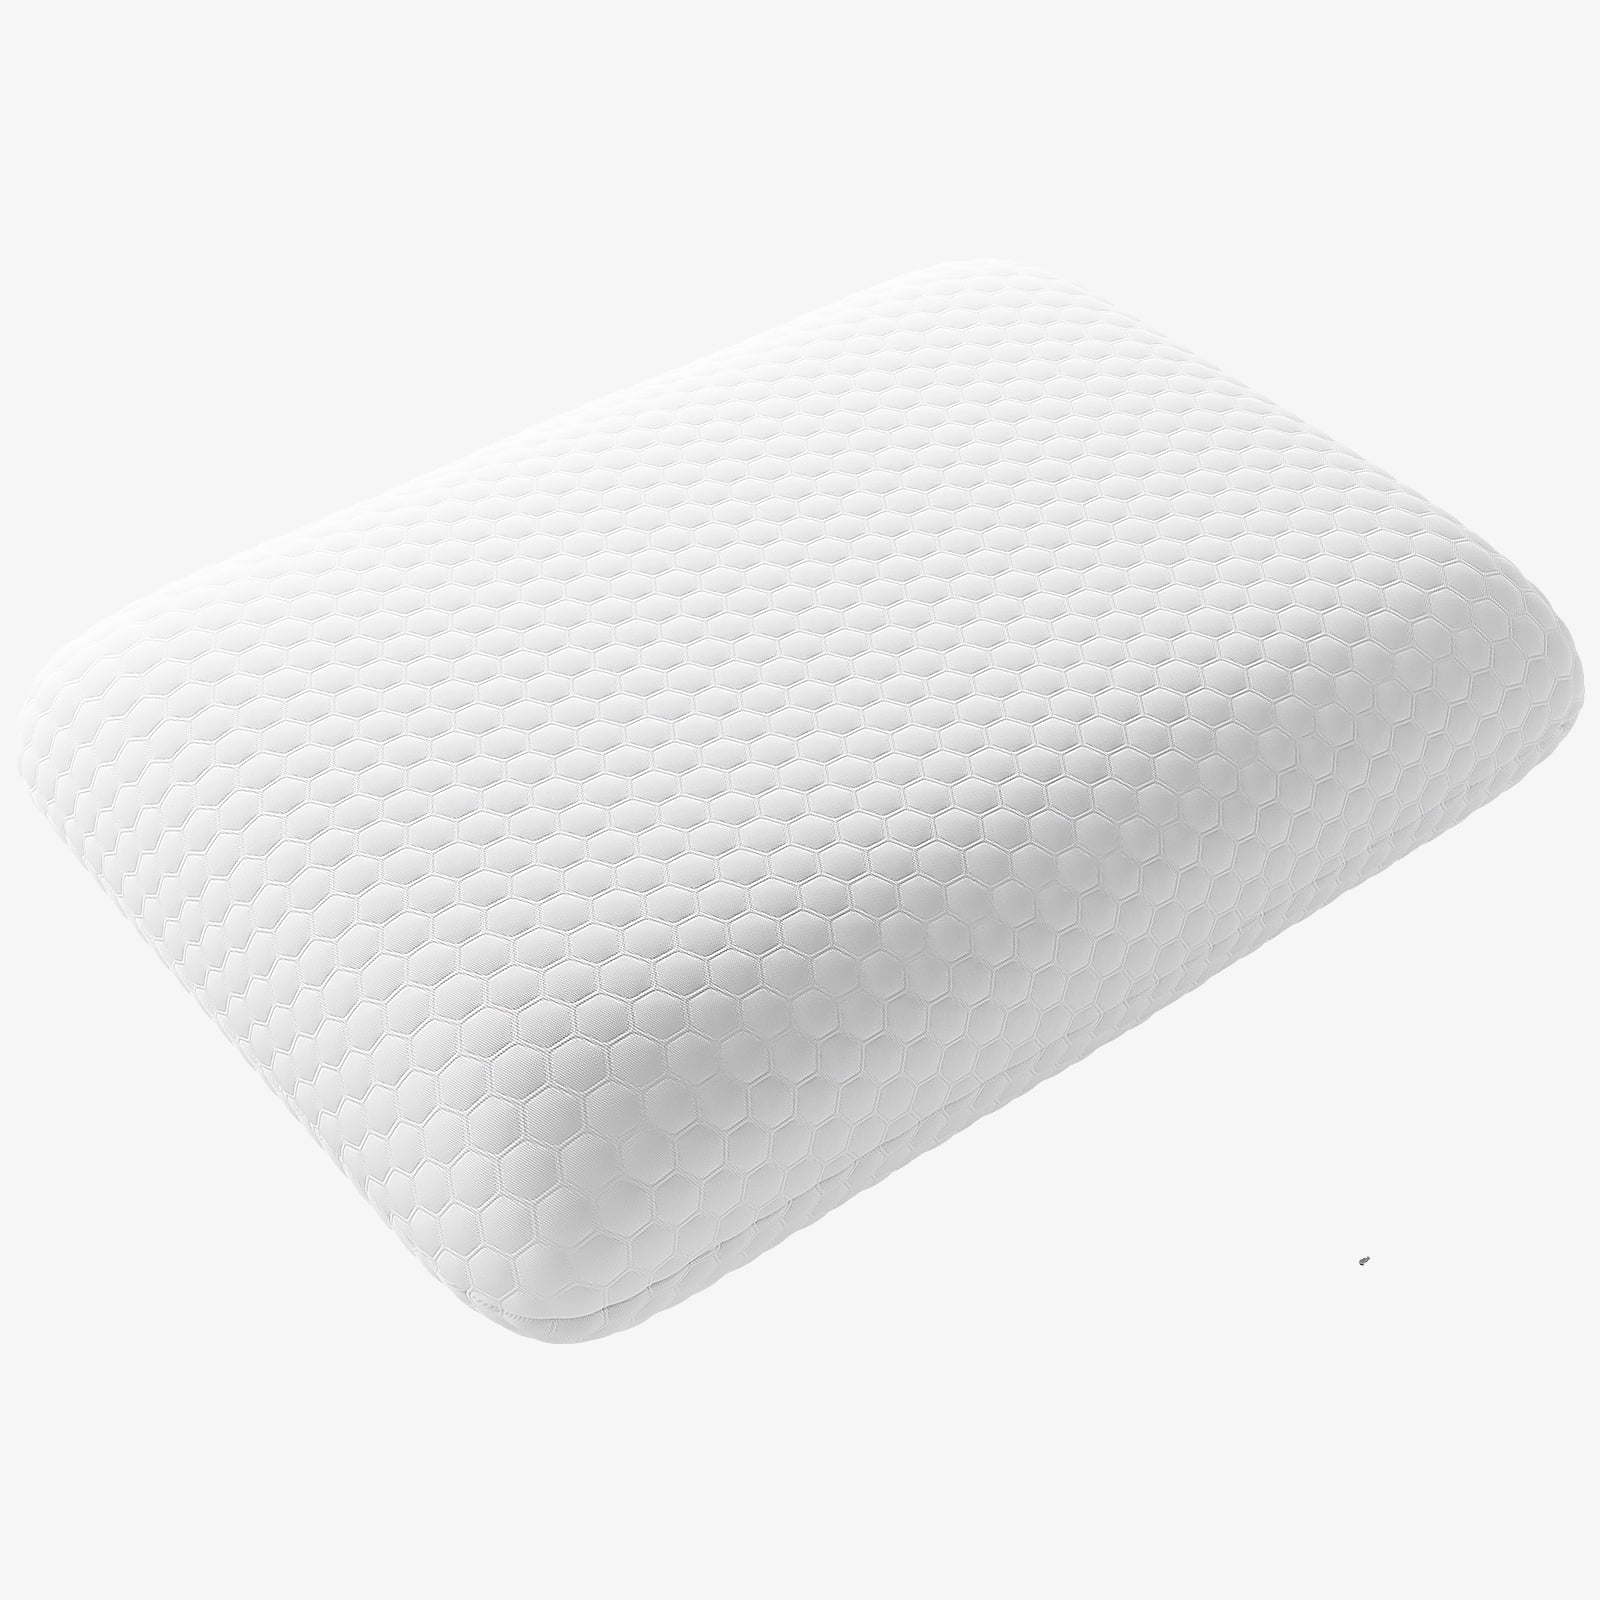 Allergen-Proof Pillows, ComfortFill